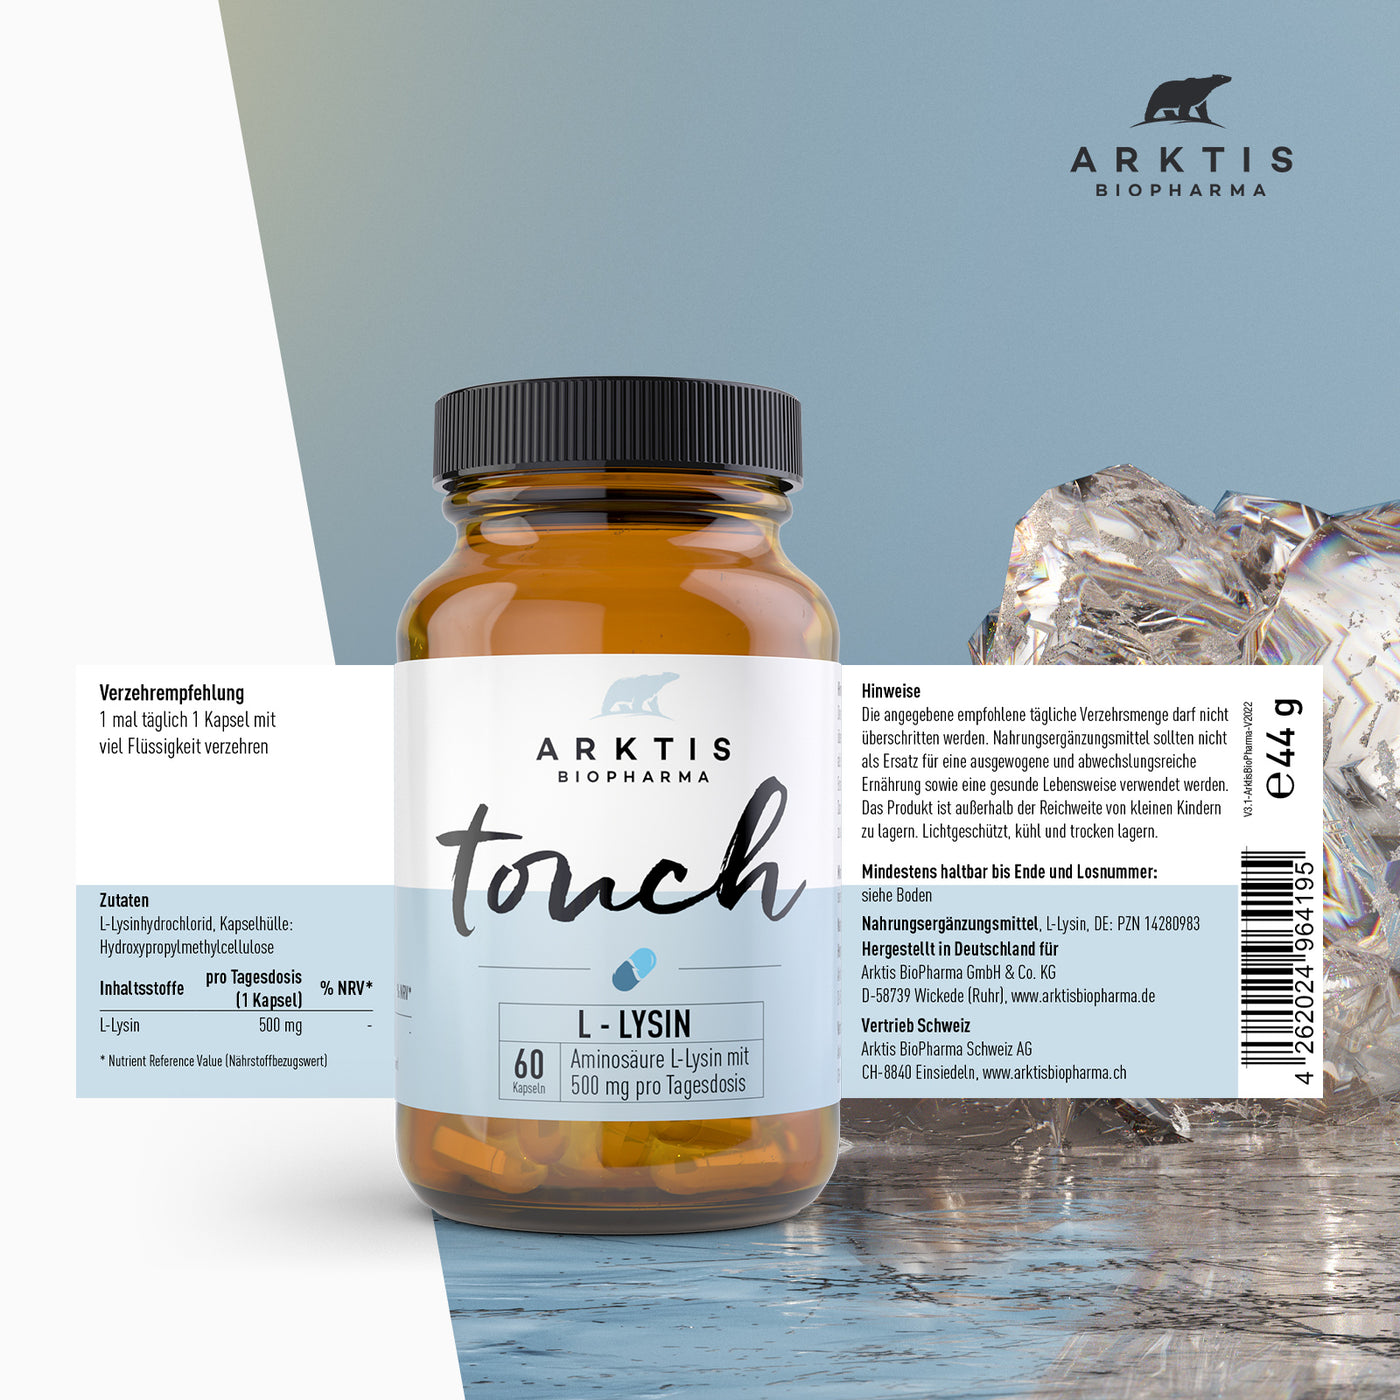 Arktis Touch - L-Lysin